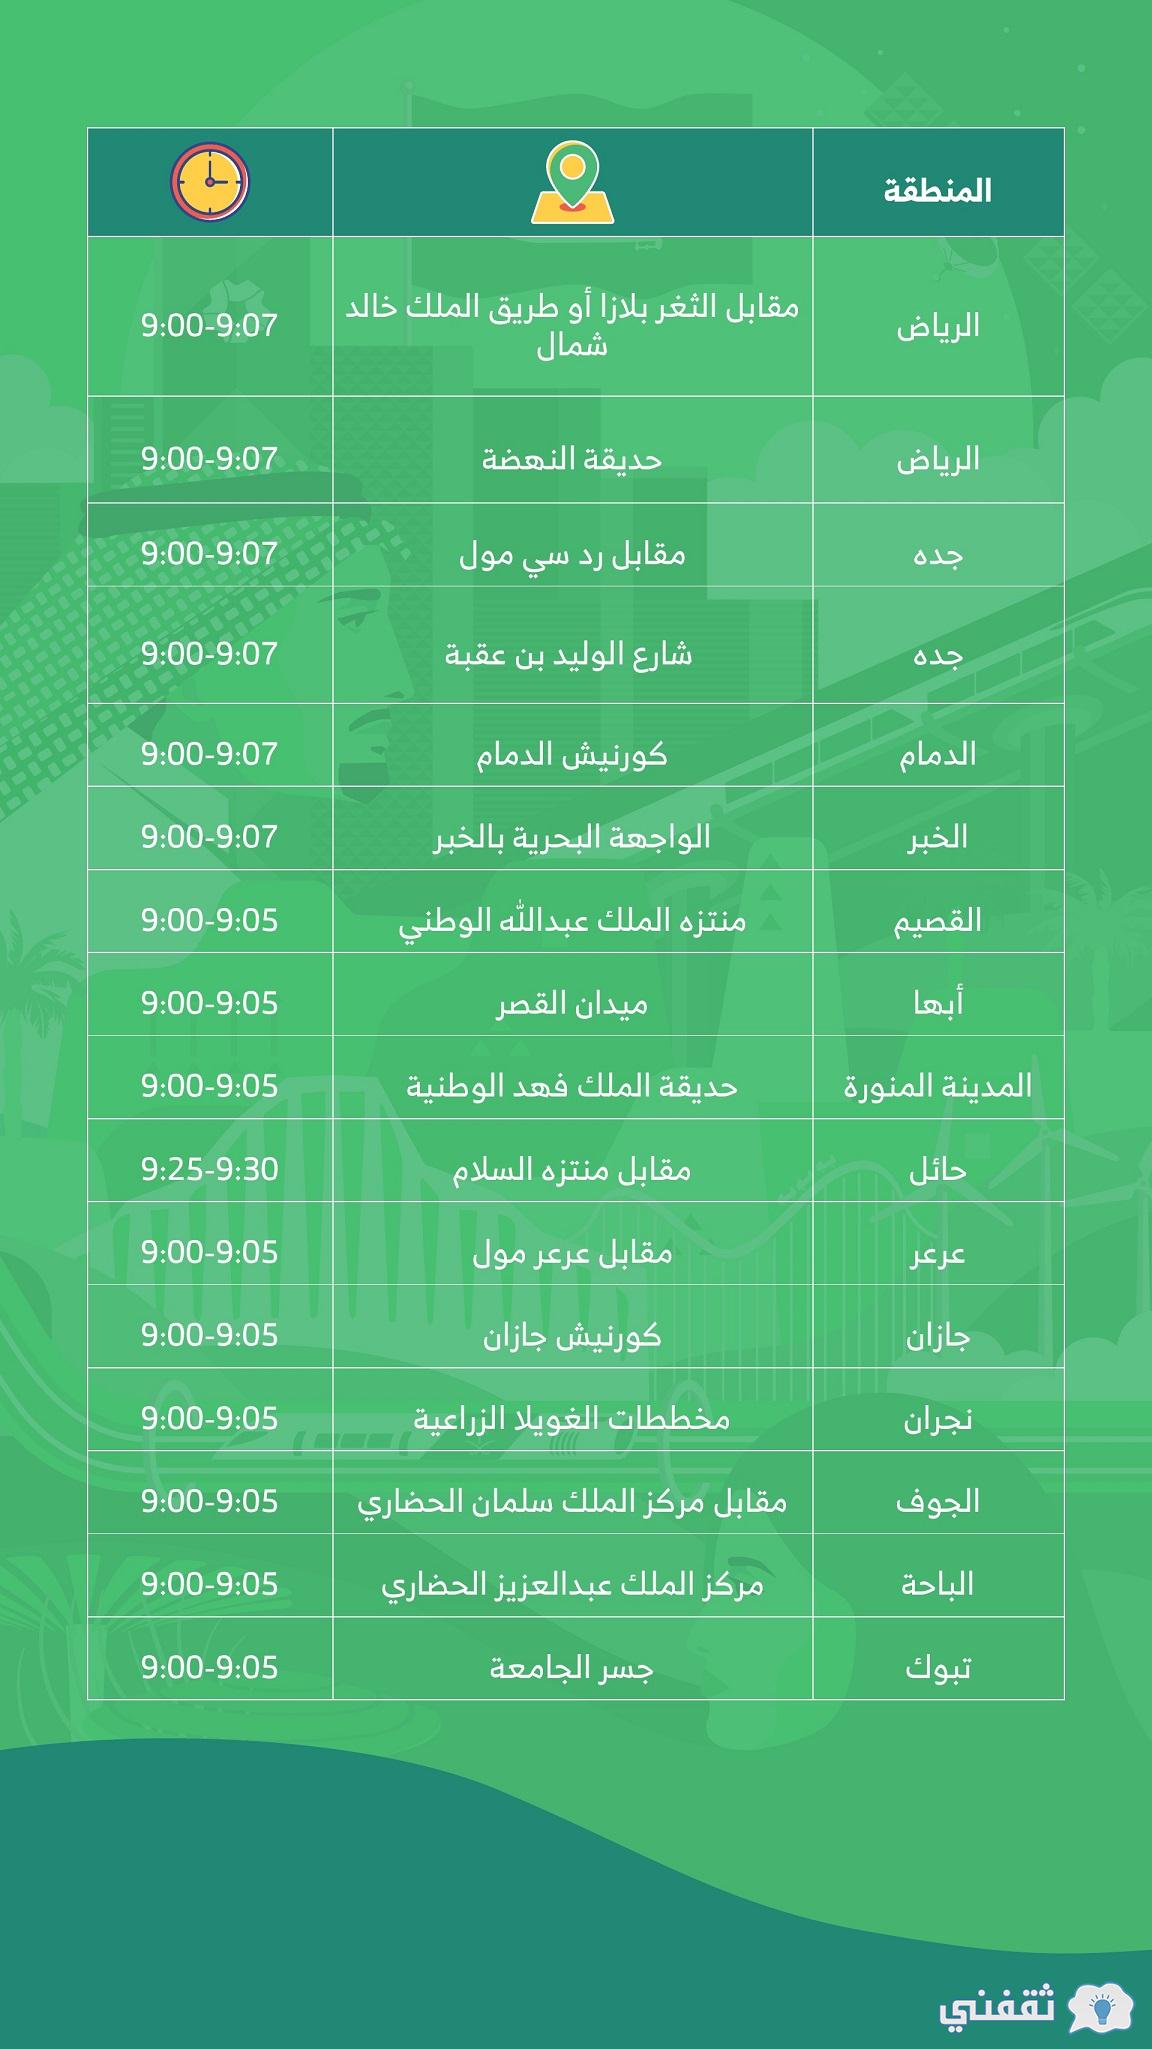 مواعيد الألعاب النارية في احتفالات اليوم الوطني السعودي 91